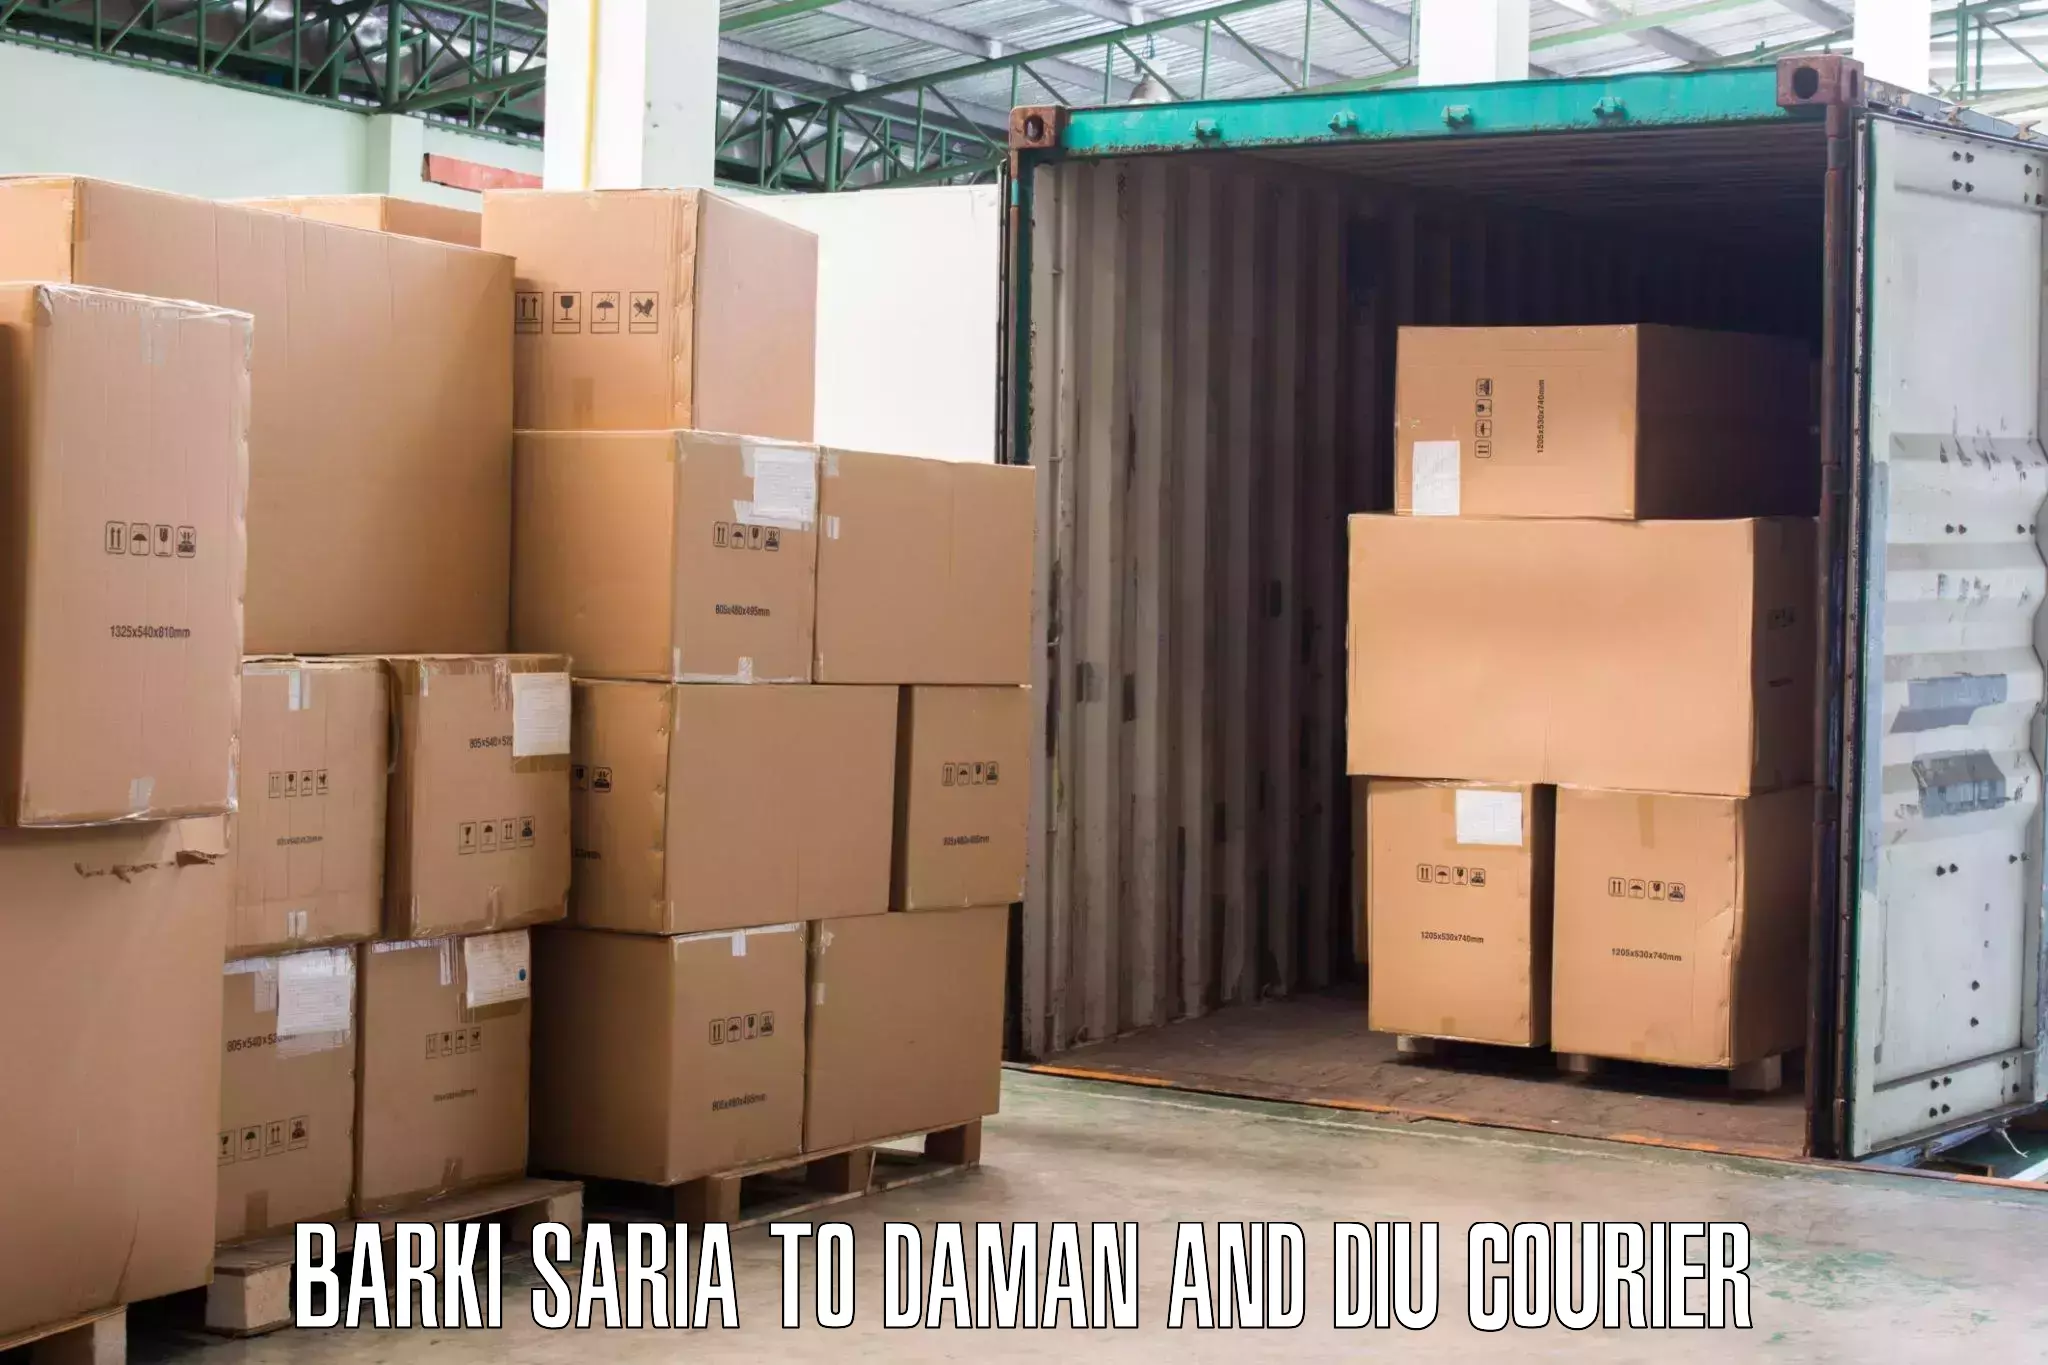 Dependable moving services Barki Saria to Daman and Diu